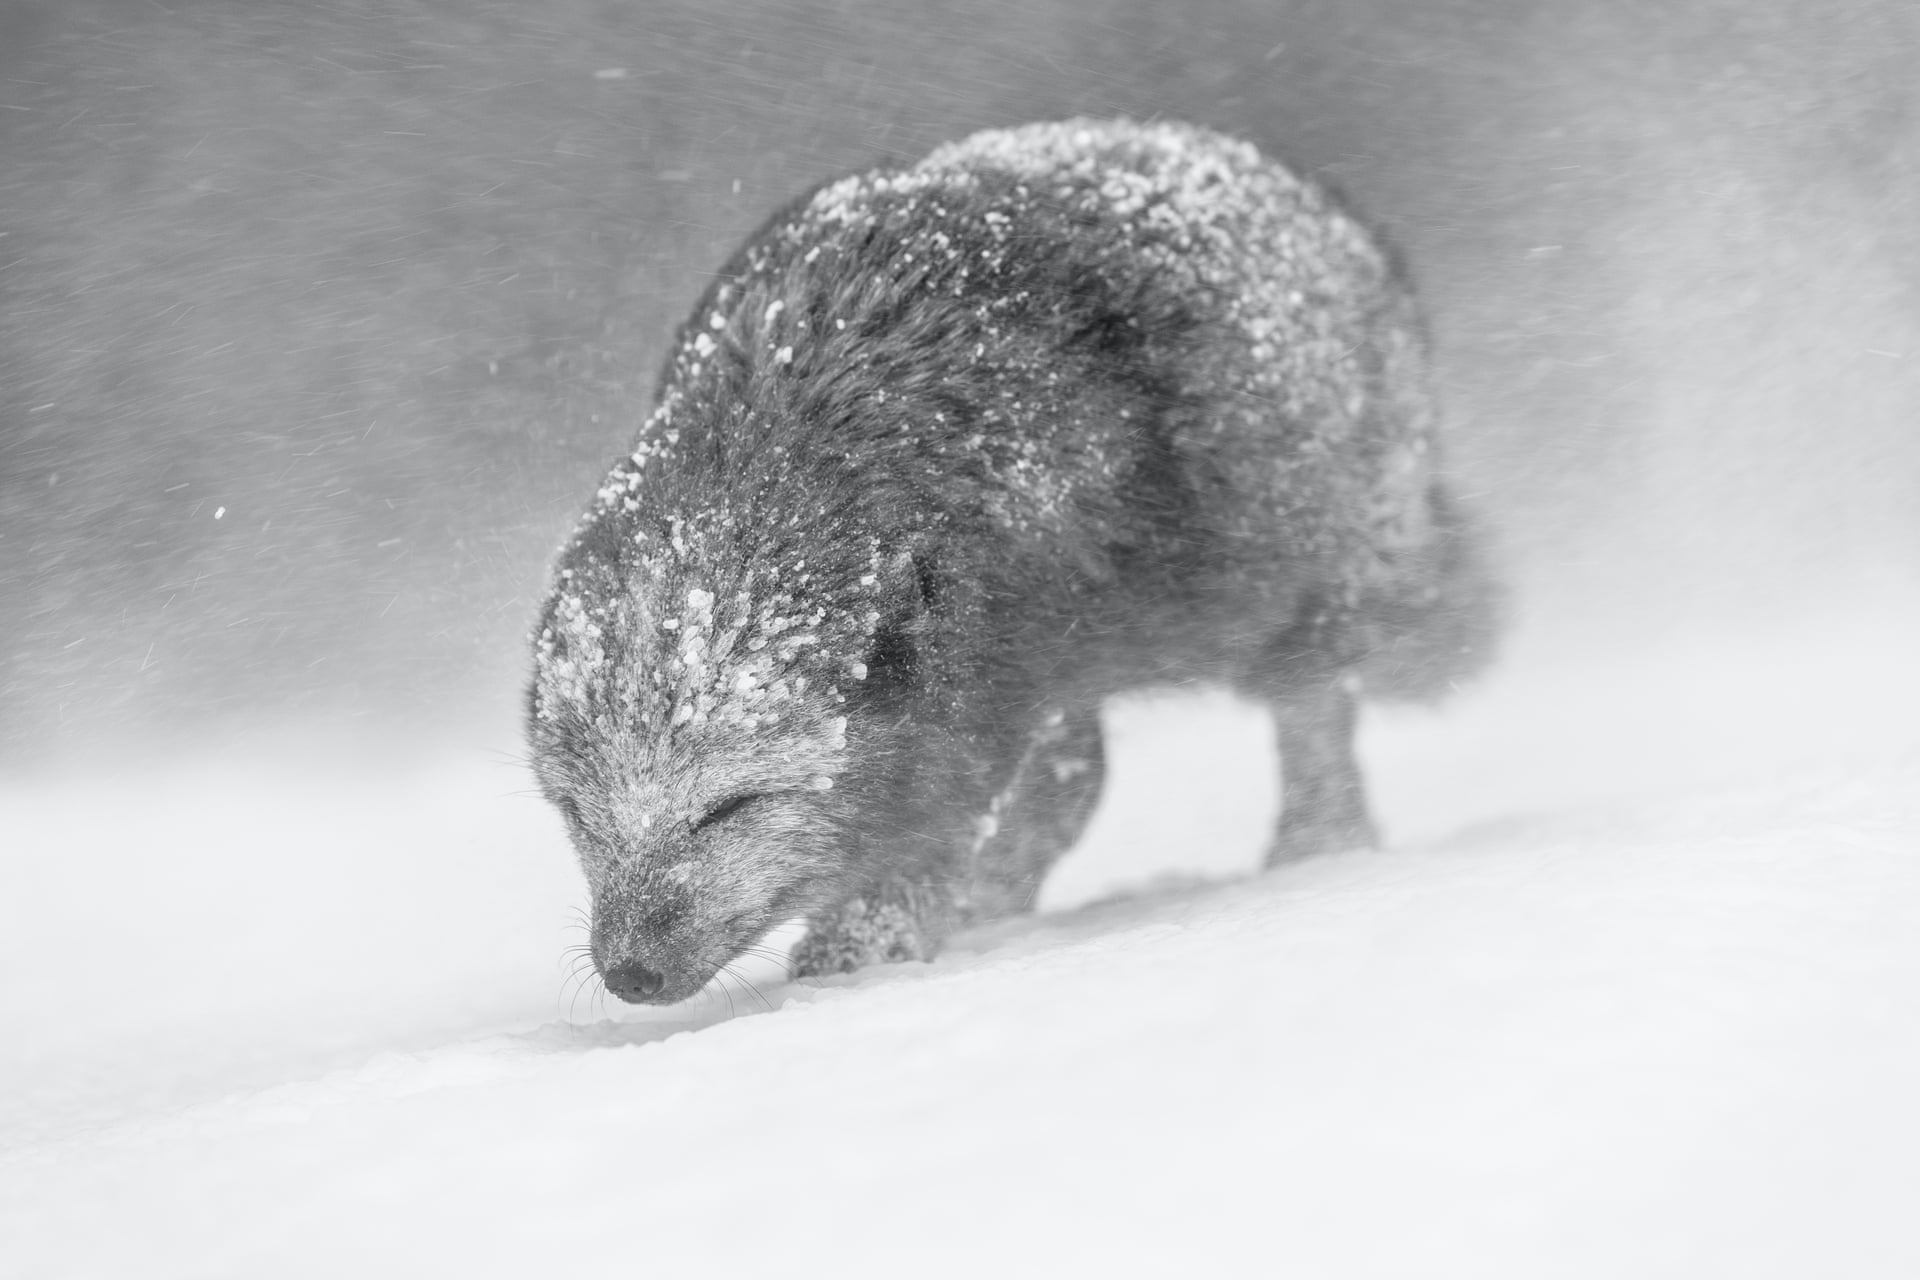 Песец, идущий сквозь снежную бурю в Исландии. Фото: Винс Бертон. Победитель в категории &laquo;Черно-белое фото&raquo;